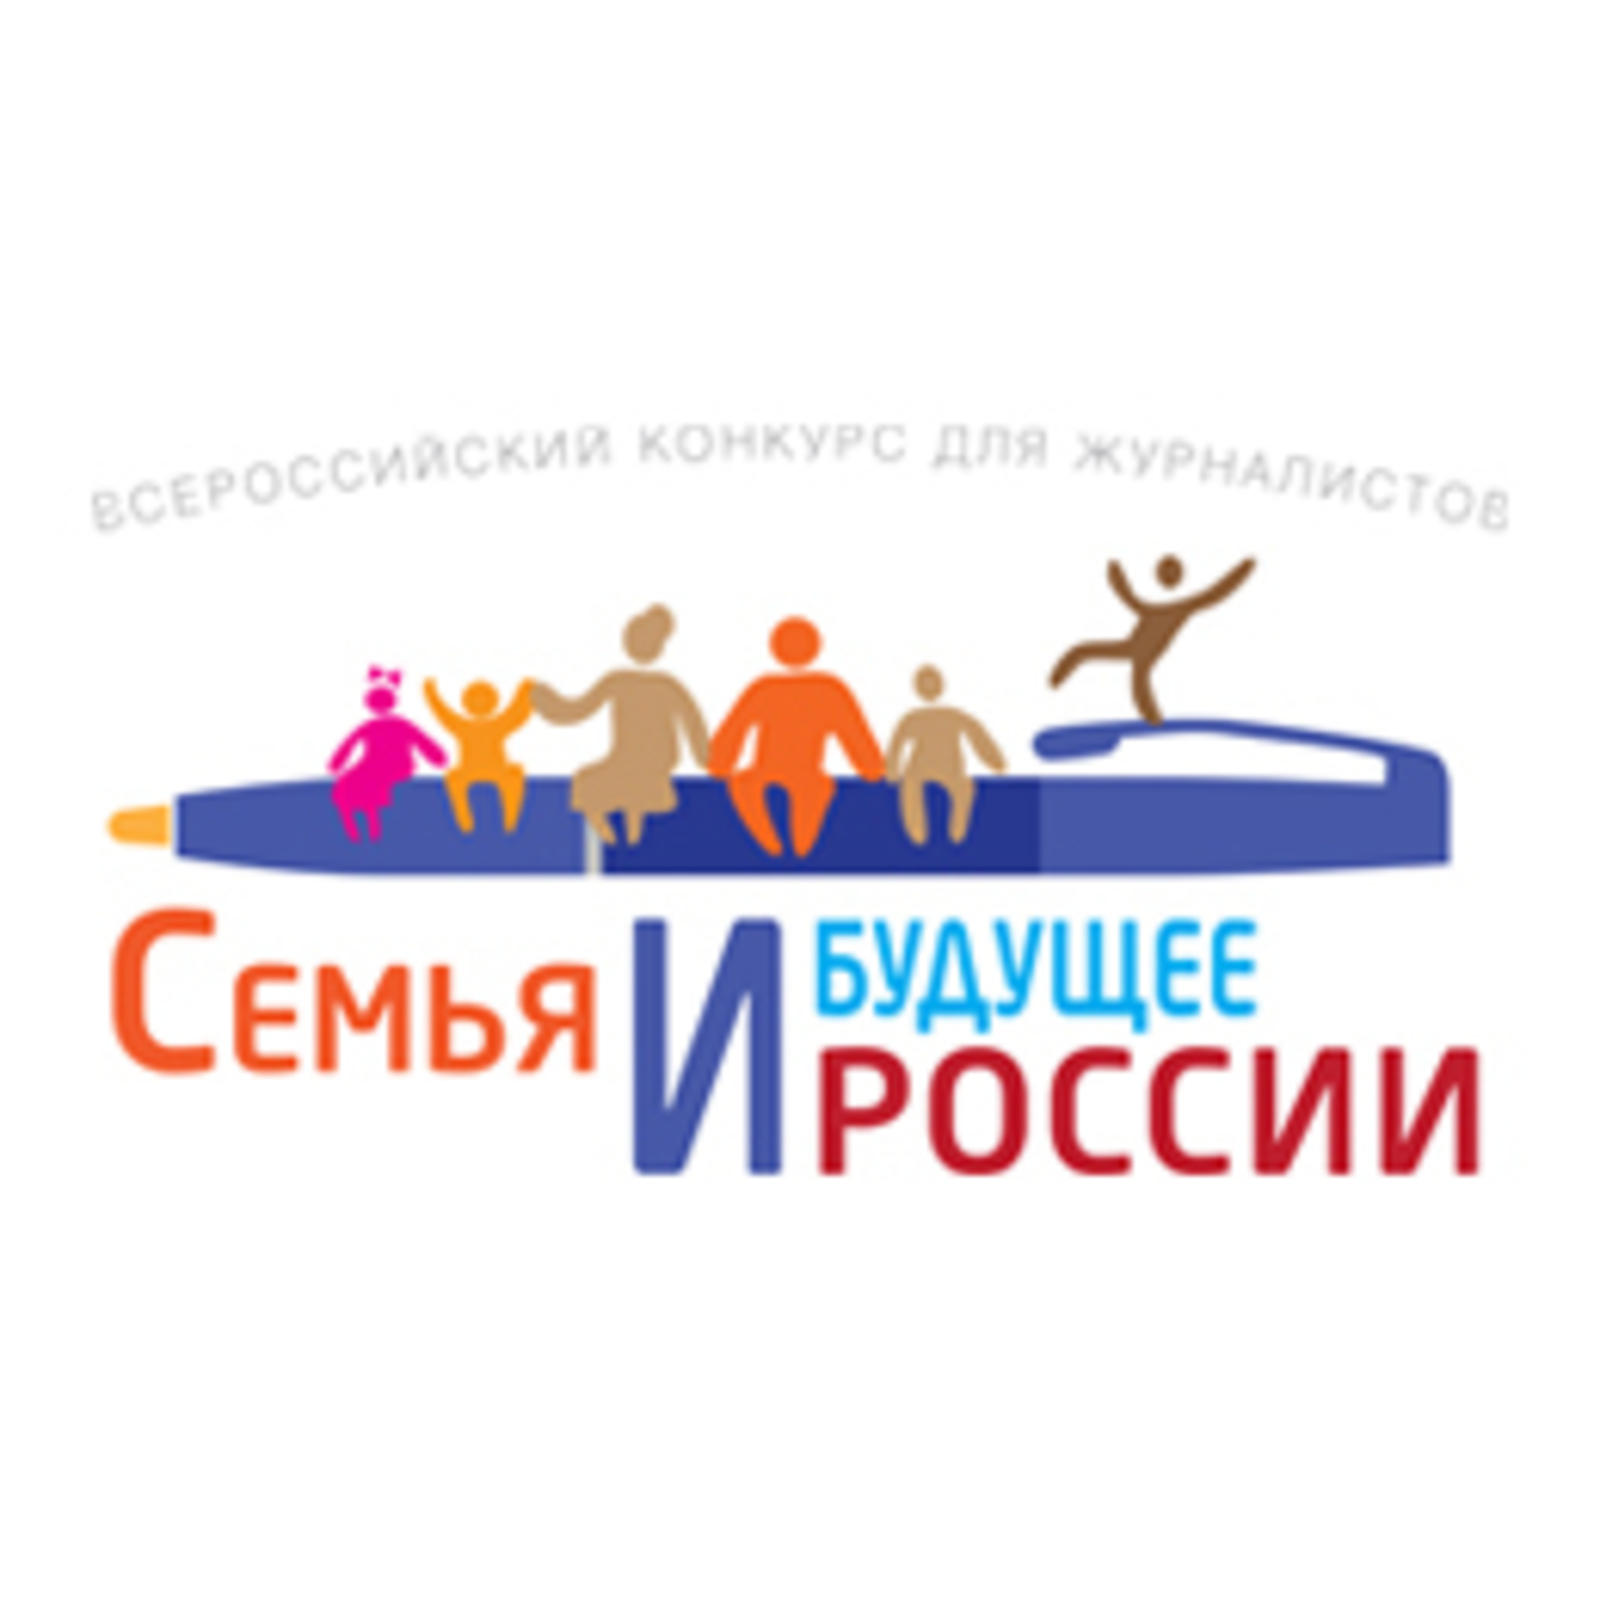 1 июня стартовал Конкурс для СМИ «Семья и будущее России» - 2022. Премиальный фонд - 2 млн. рублей